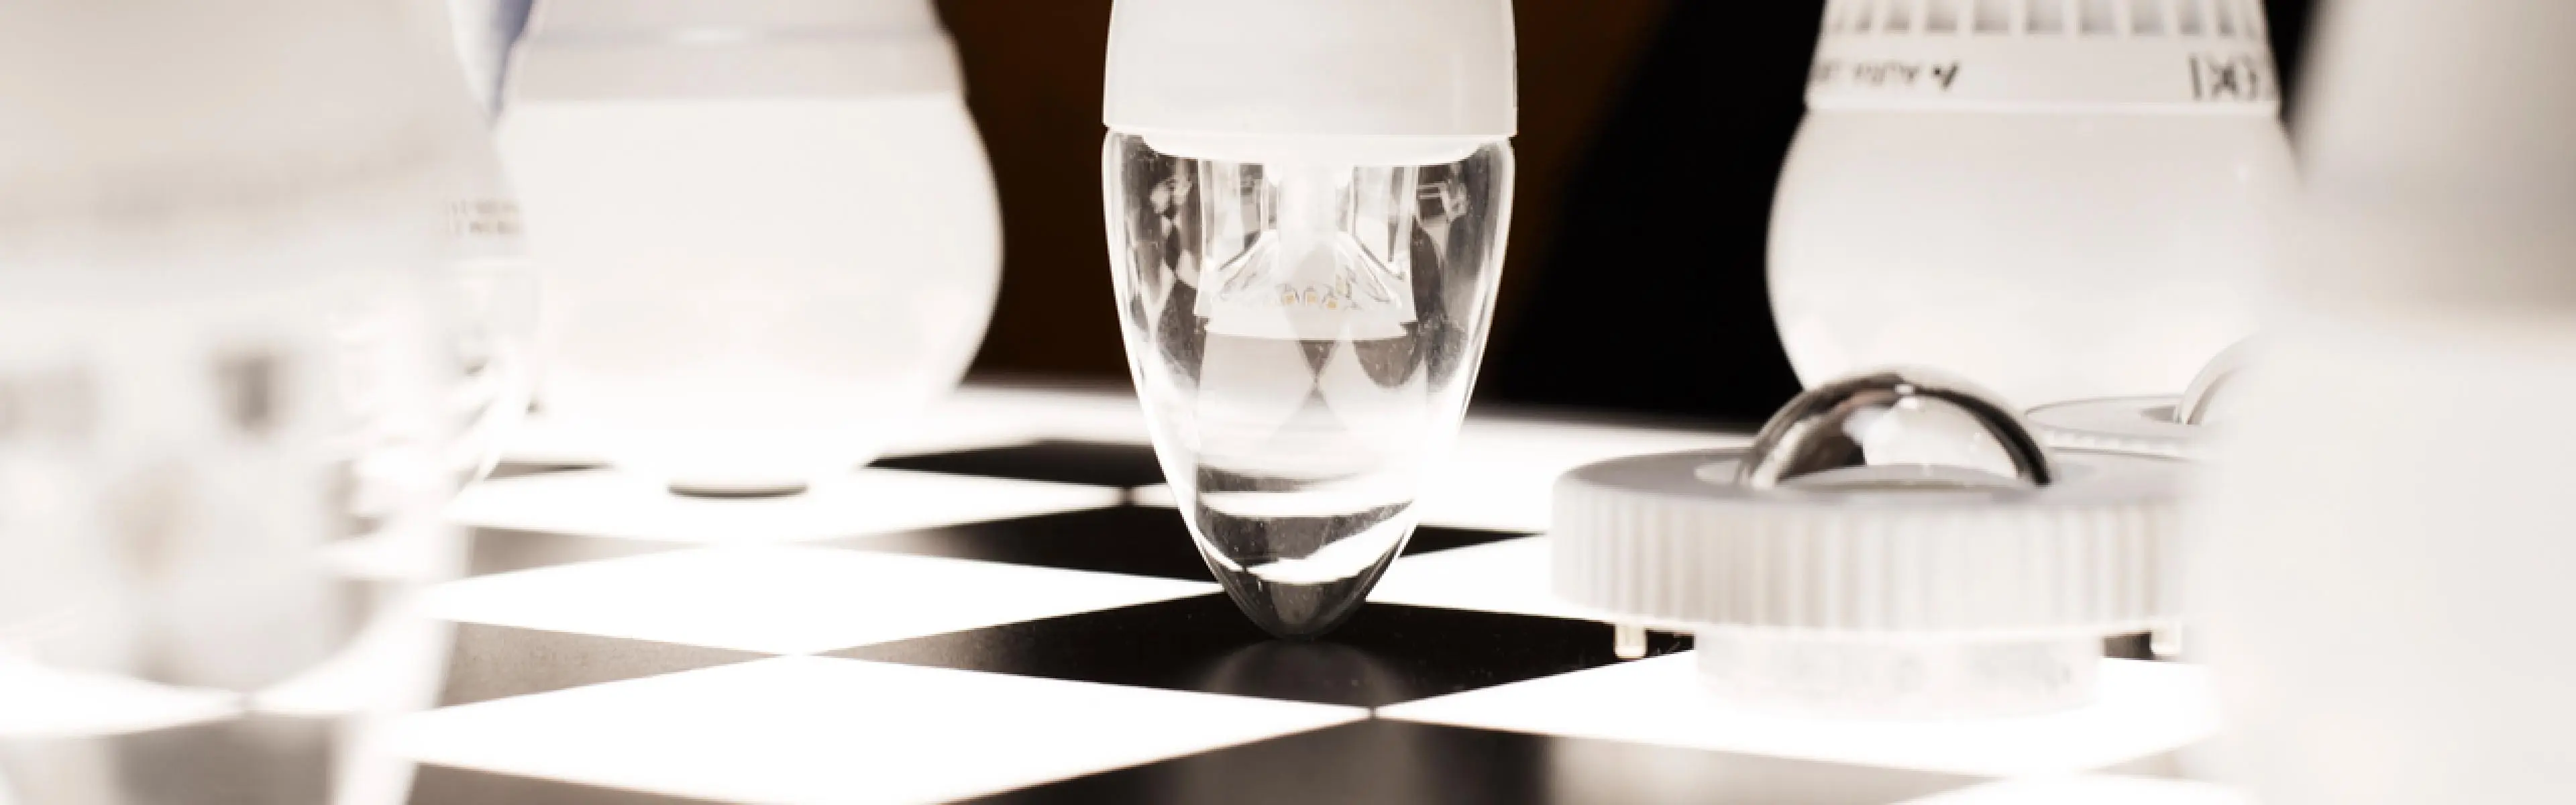 LED lyspærer på sjakkbrett